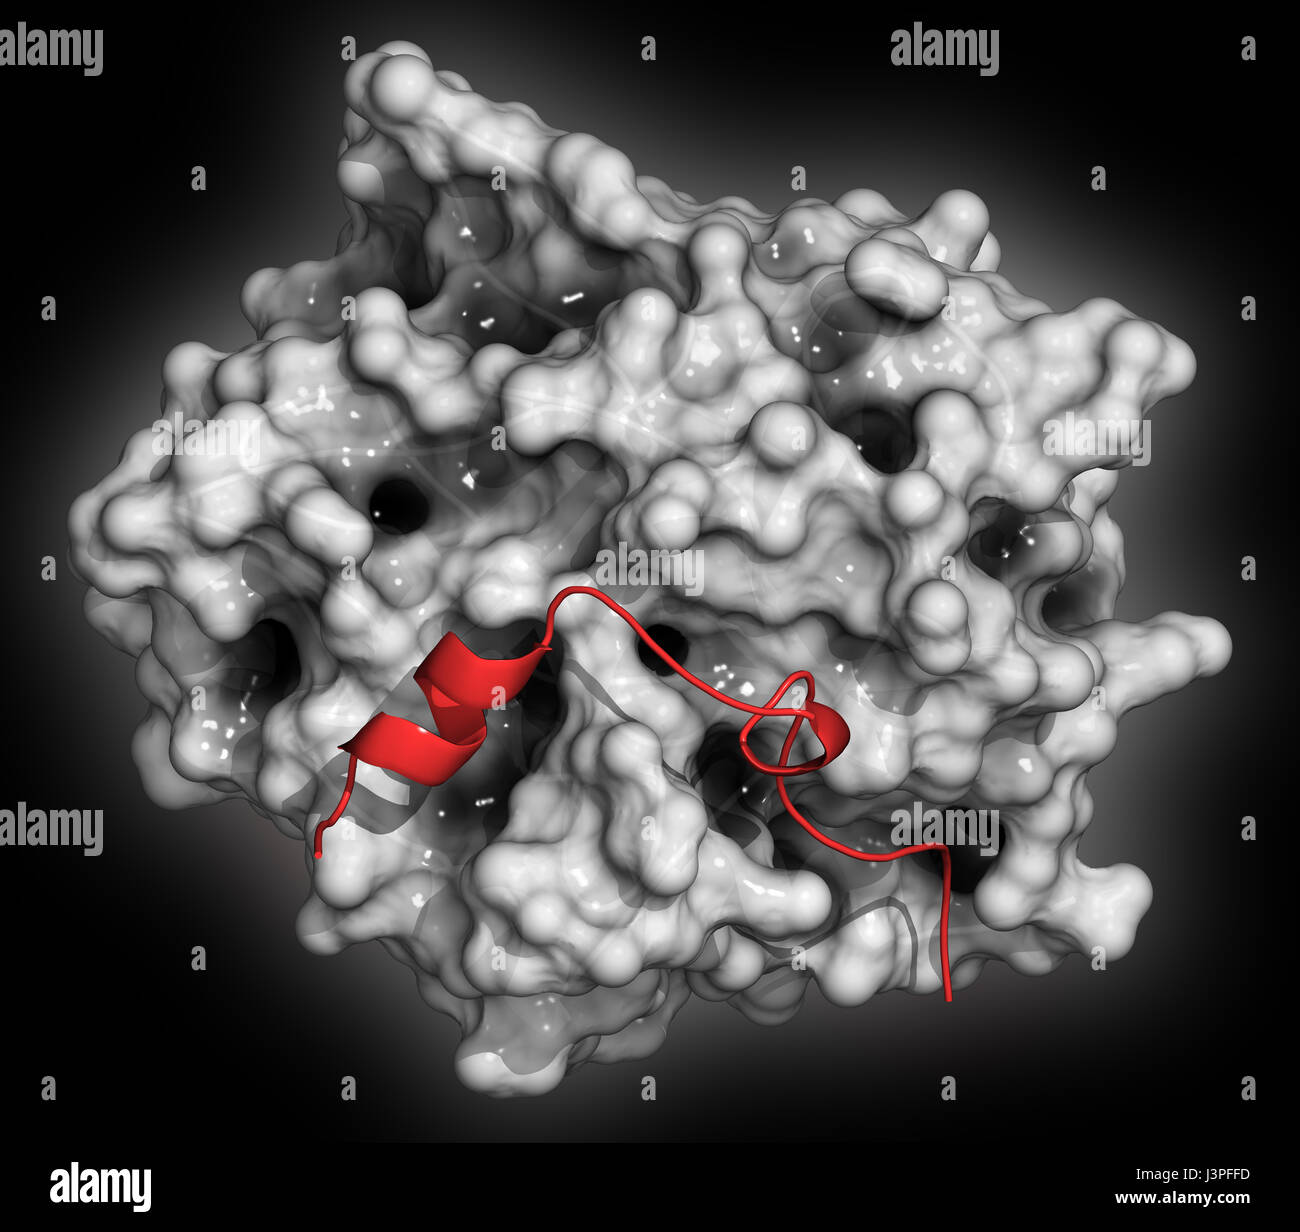 La trombina sangue-enzima di coagulazione umano alfa-trombina molecola è una proteina chiave alla cascata di coagulazione del sangue. Converte il fibrinogeno solubile in inso Foto Stock